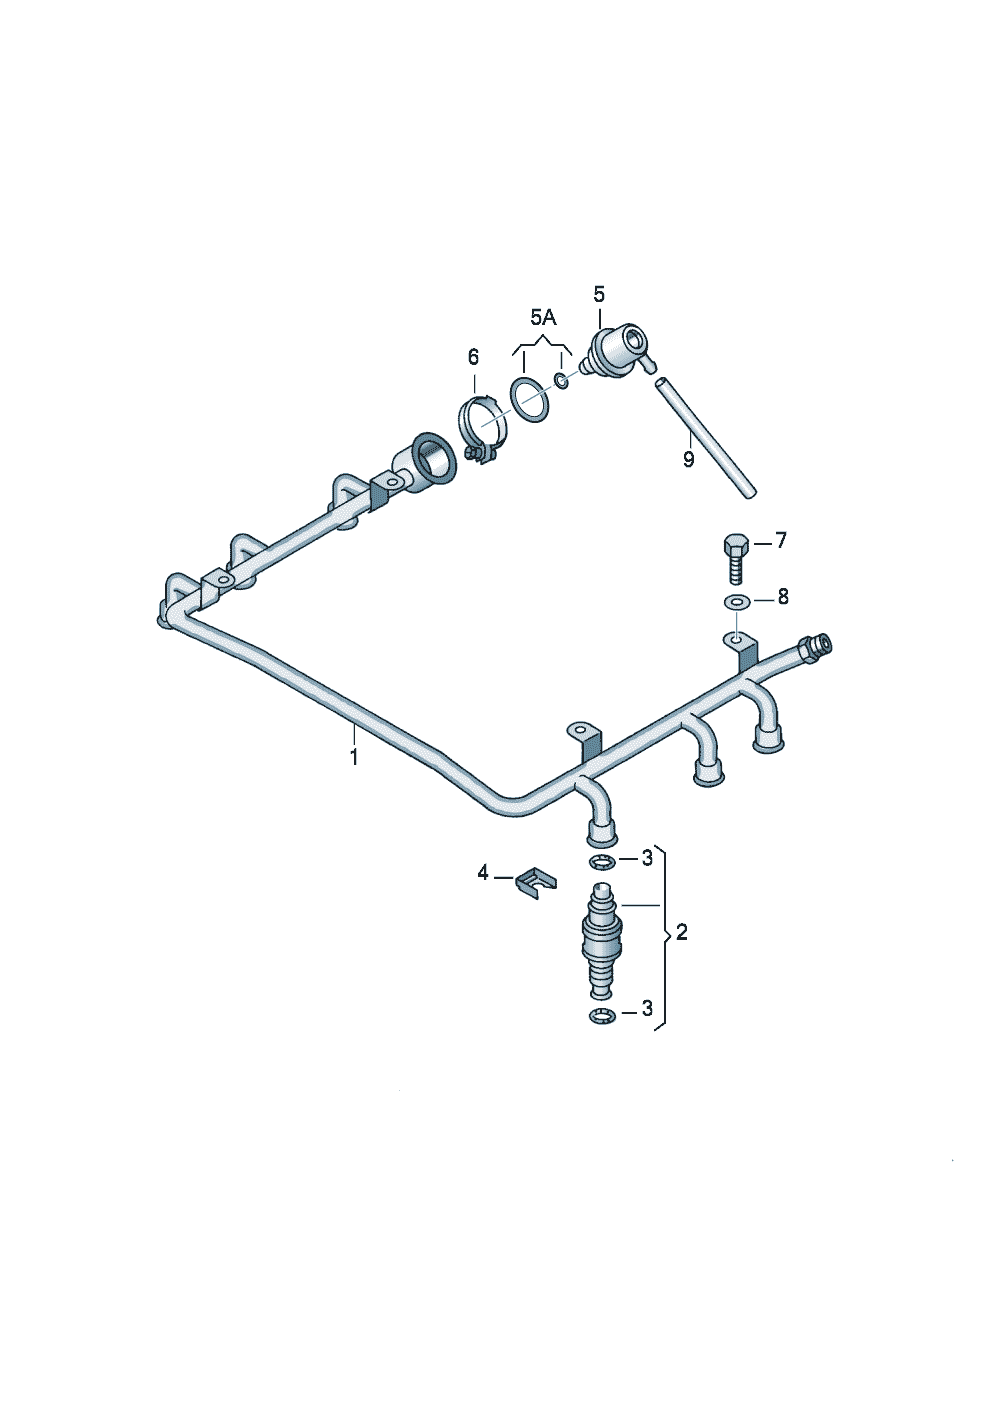 ФорсункаРегулятор давленияТопливопровод 2,8 л. - Audi A8 - a8